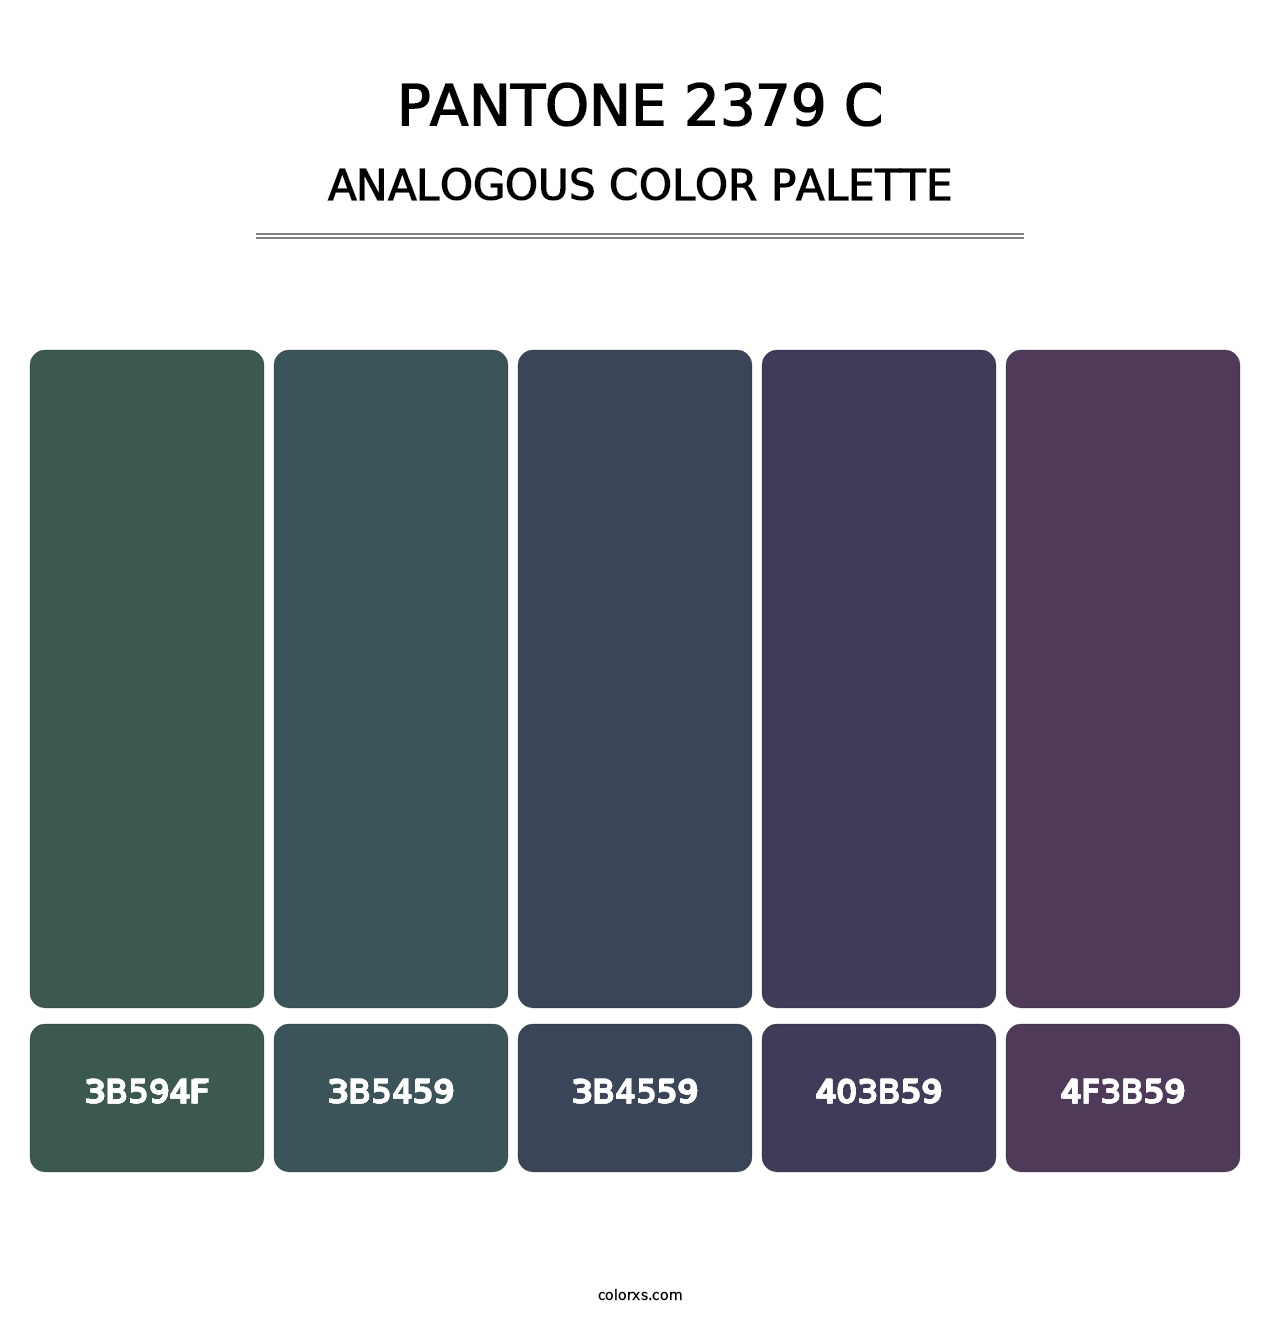 PANTONE 2379 C - Analogous Color Palette